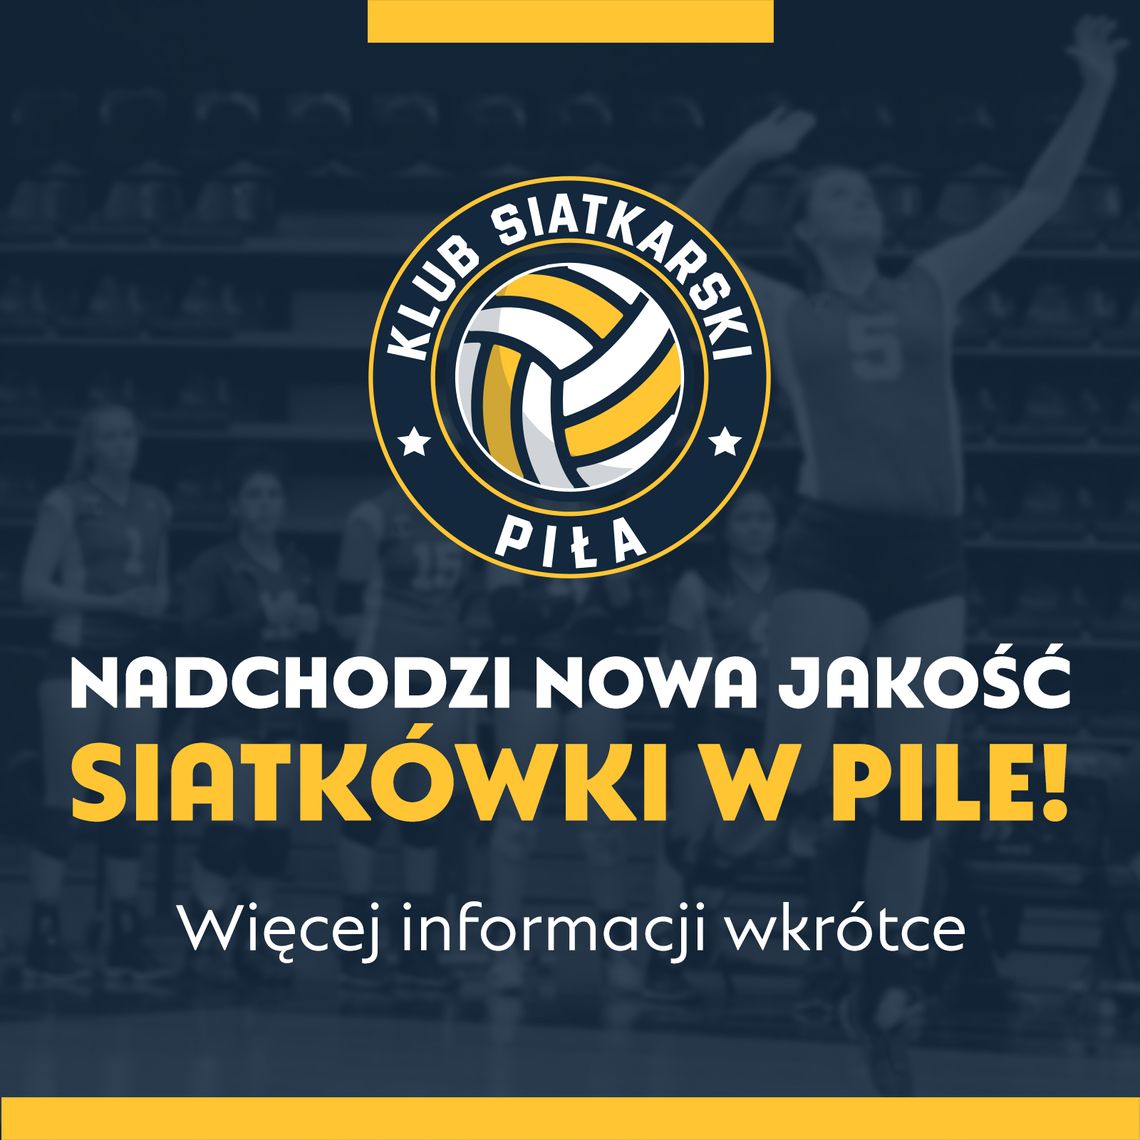 Klub Siatkarski Piła – jesteśmy nowym klubem!